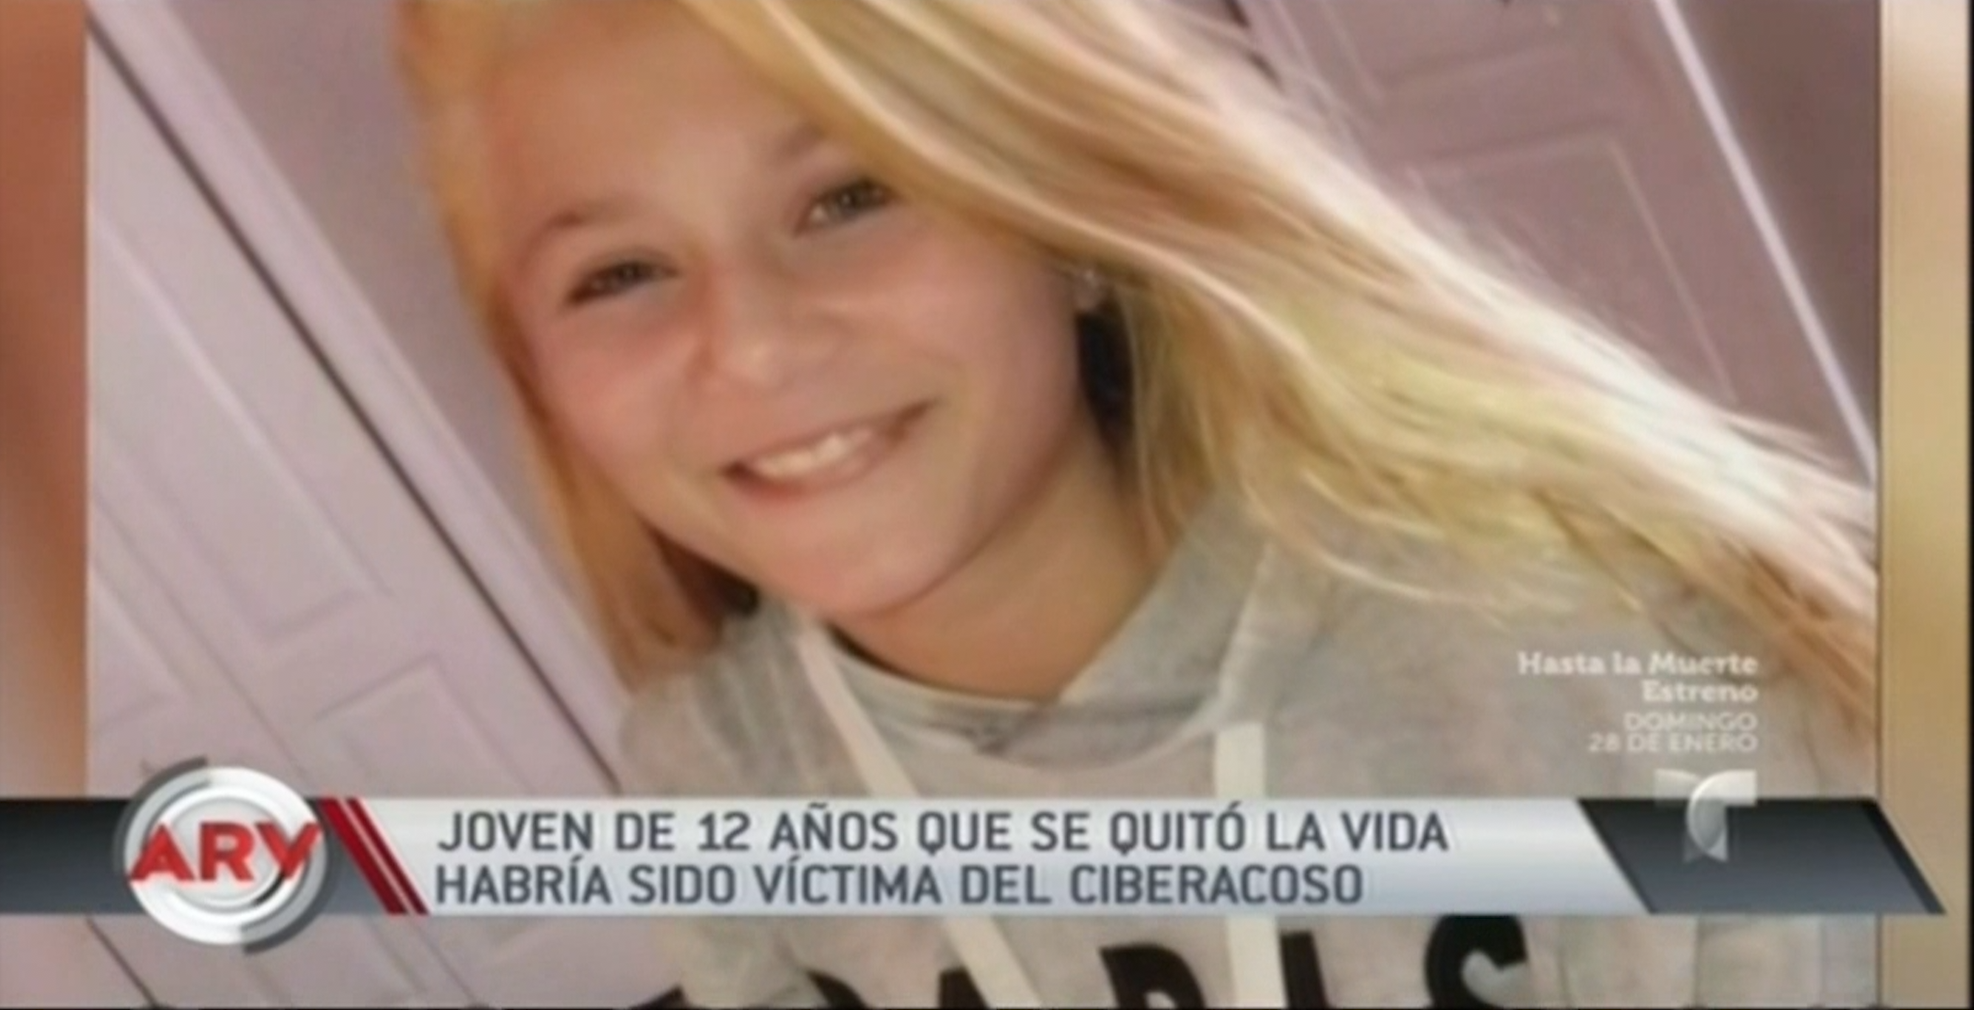 Jovencita De 12 Años Se Suicida Tras Ser Víctima Del Ciberacoso